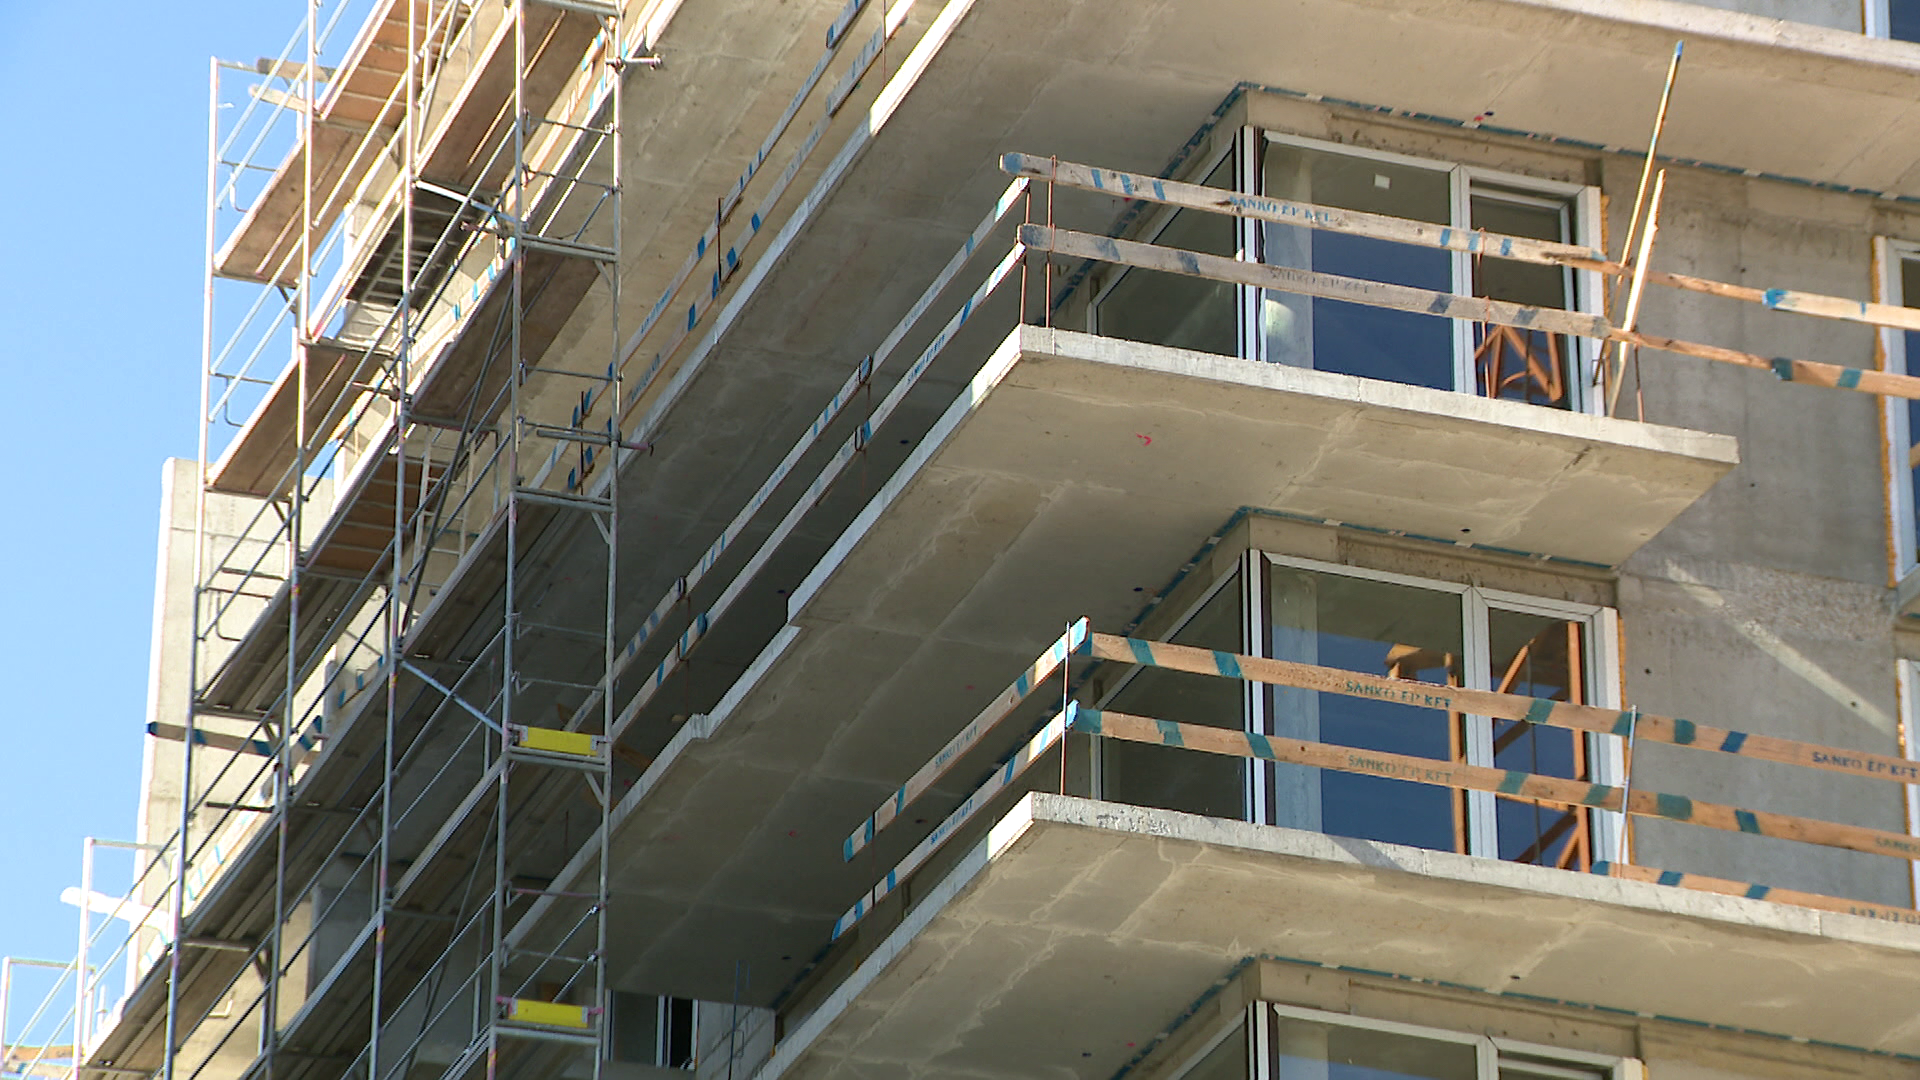 Maximum 5 százalékos lakáshitel kamatot kérnek az építési vállalkozók 